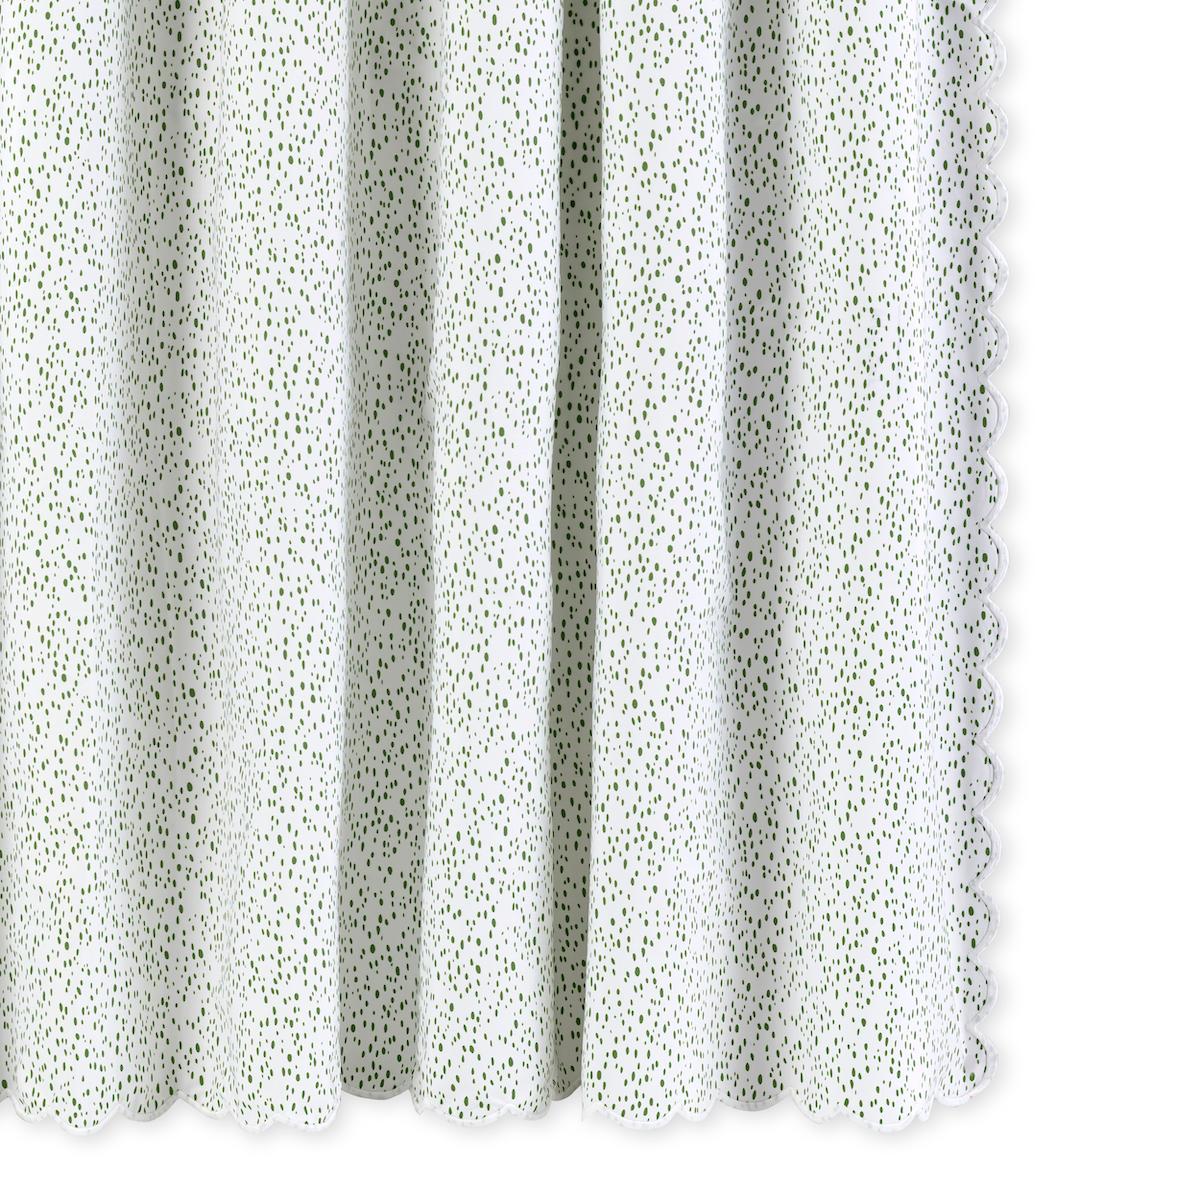 Celine Shower Curtain_Grass